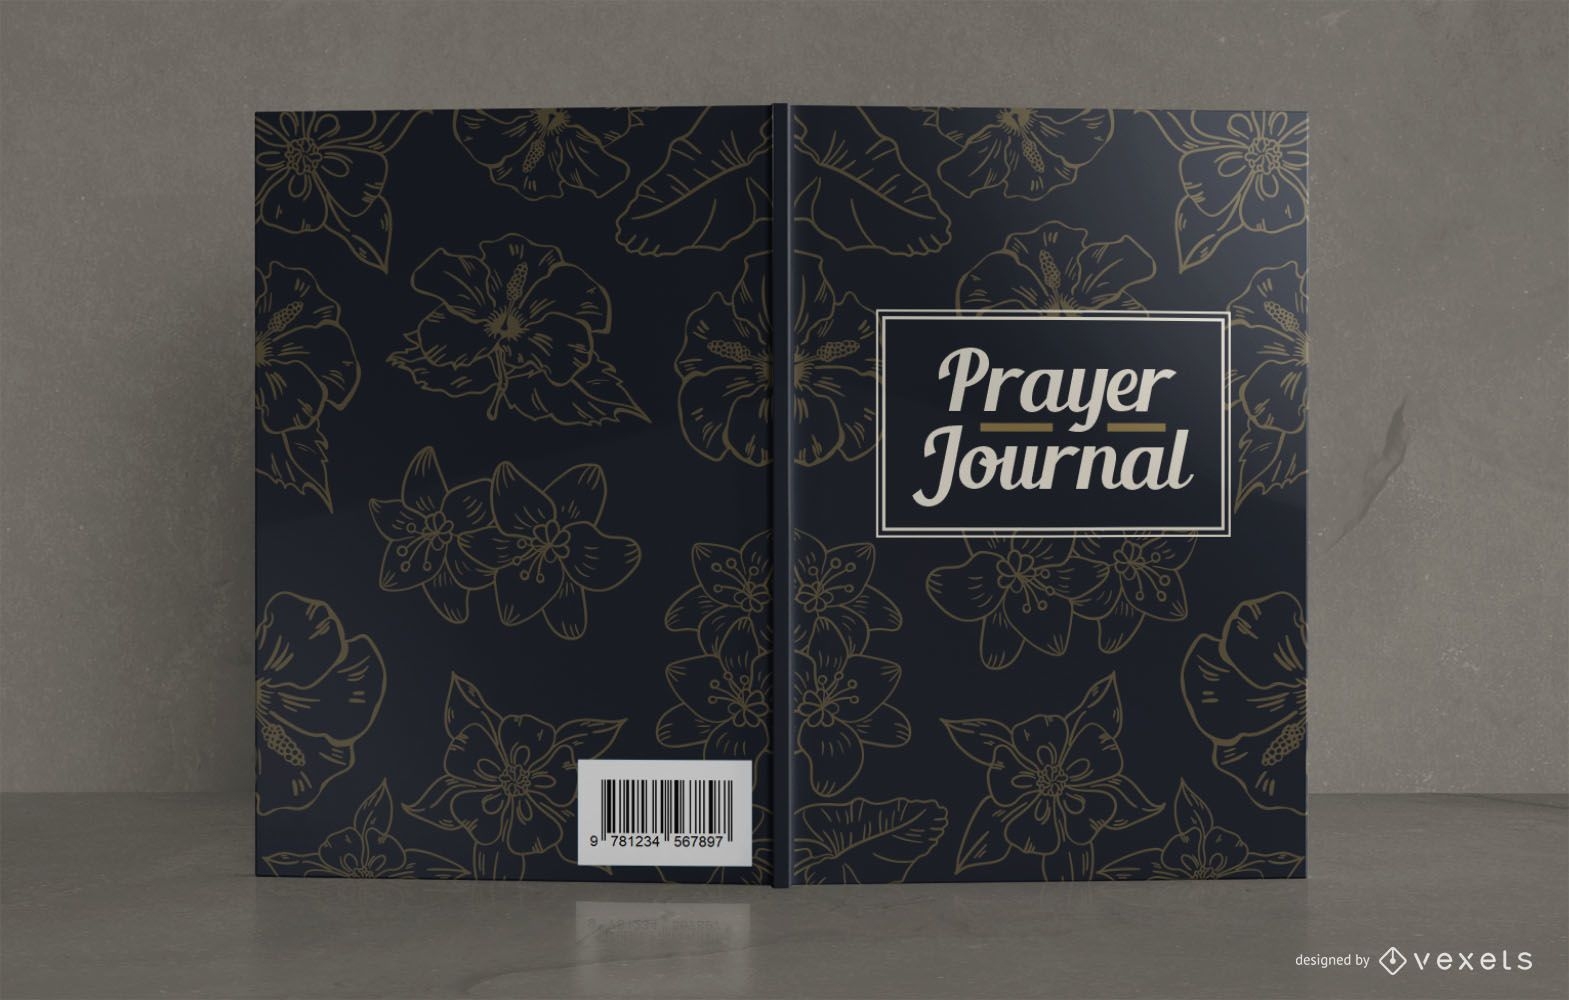 Bucheinbanddesign für Gebetstagebuch mit Blumenmuster